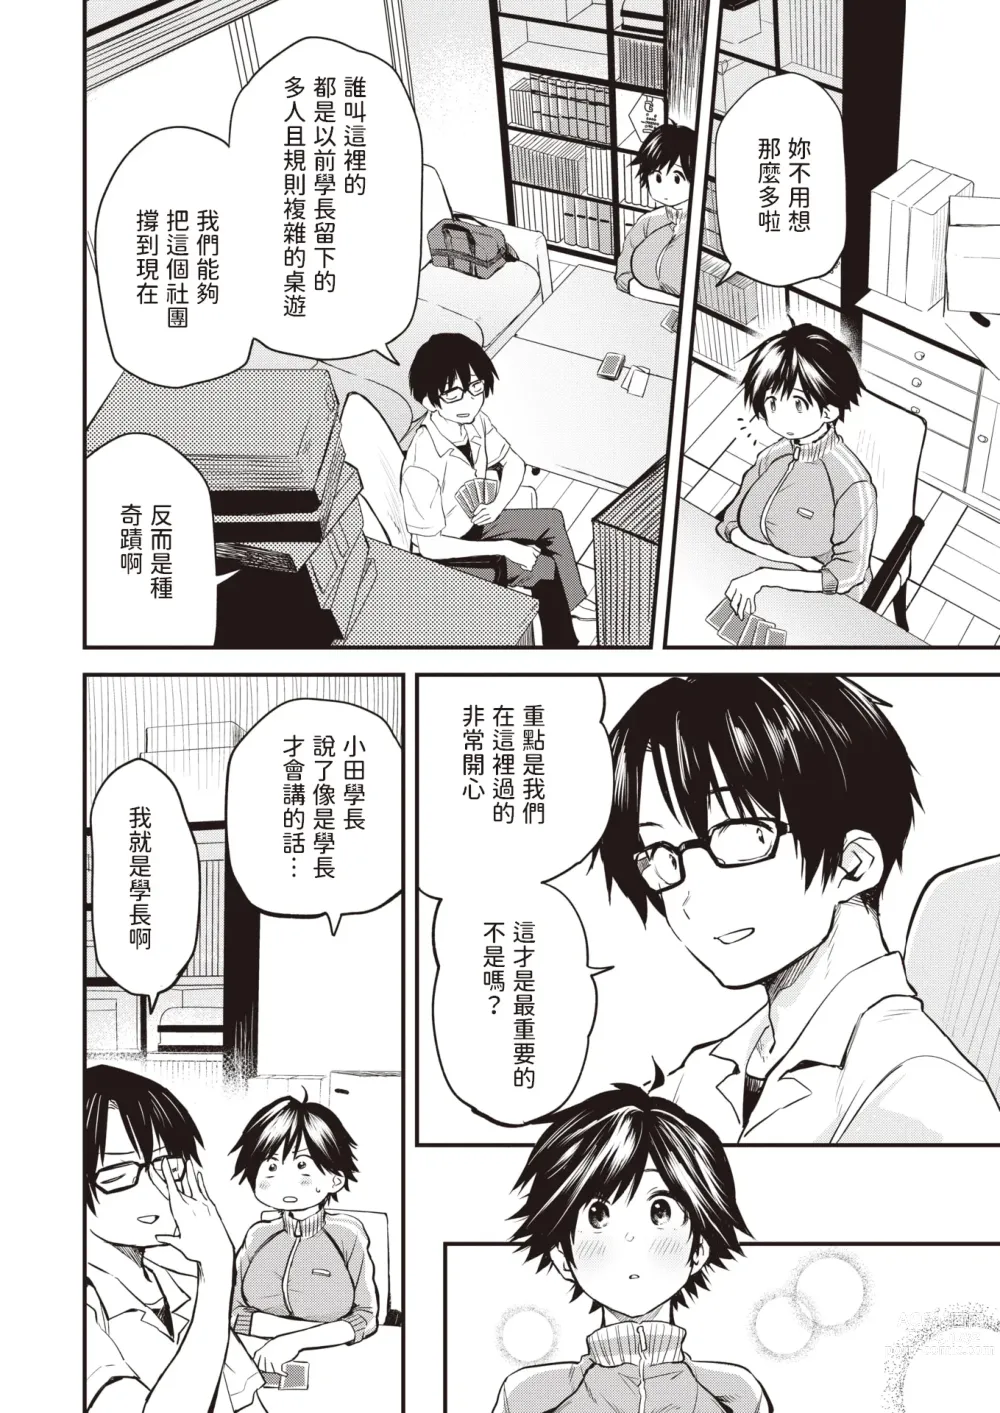 Page 4 of manga Saigo no Bushitsu